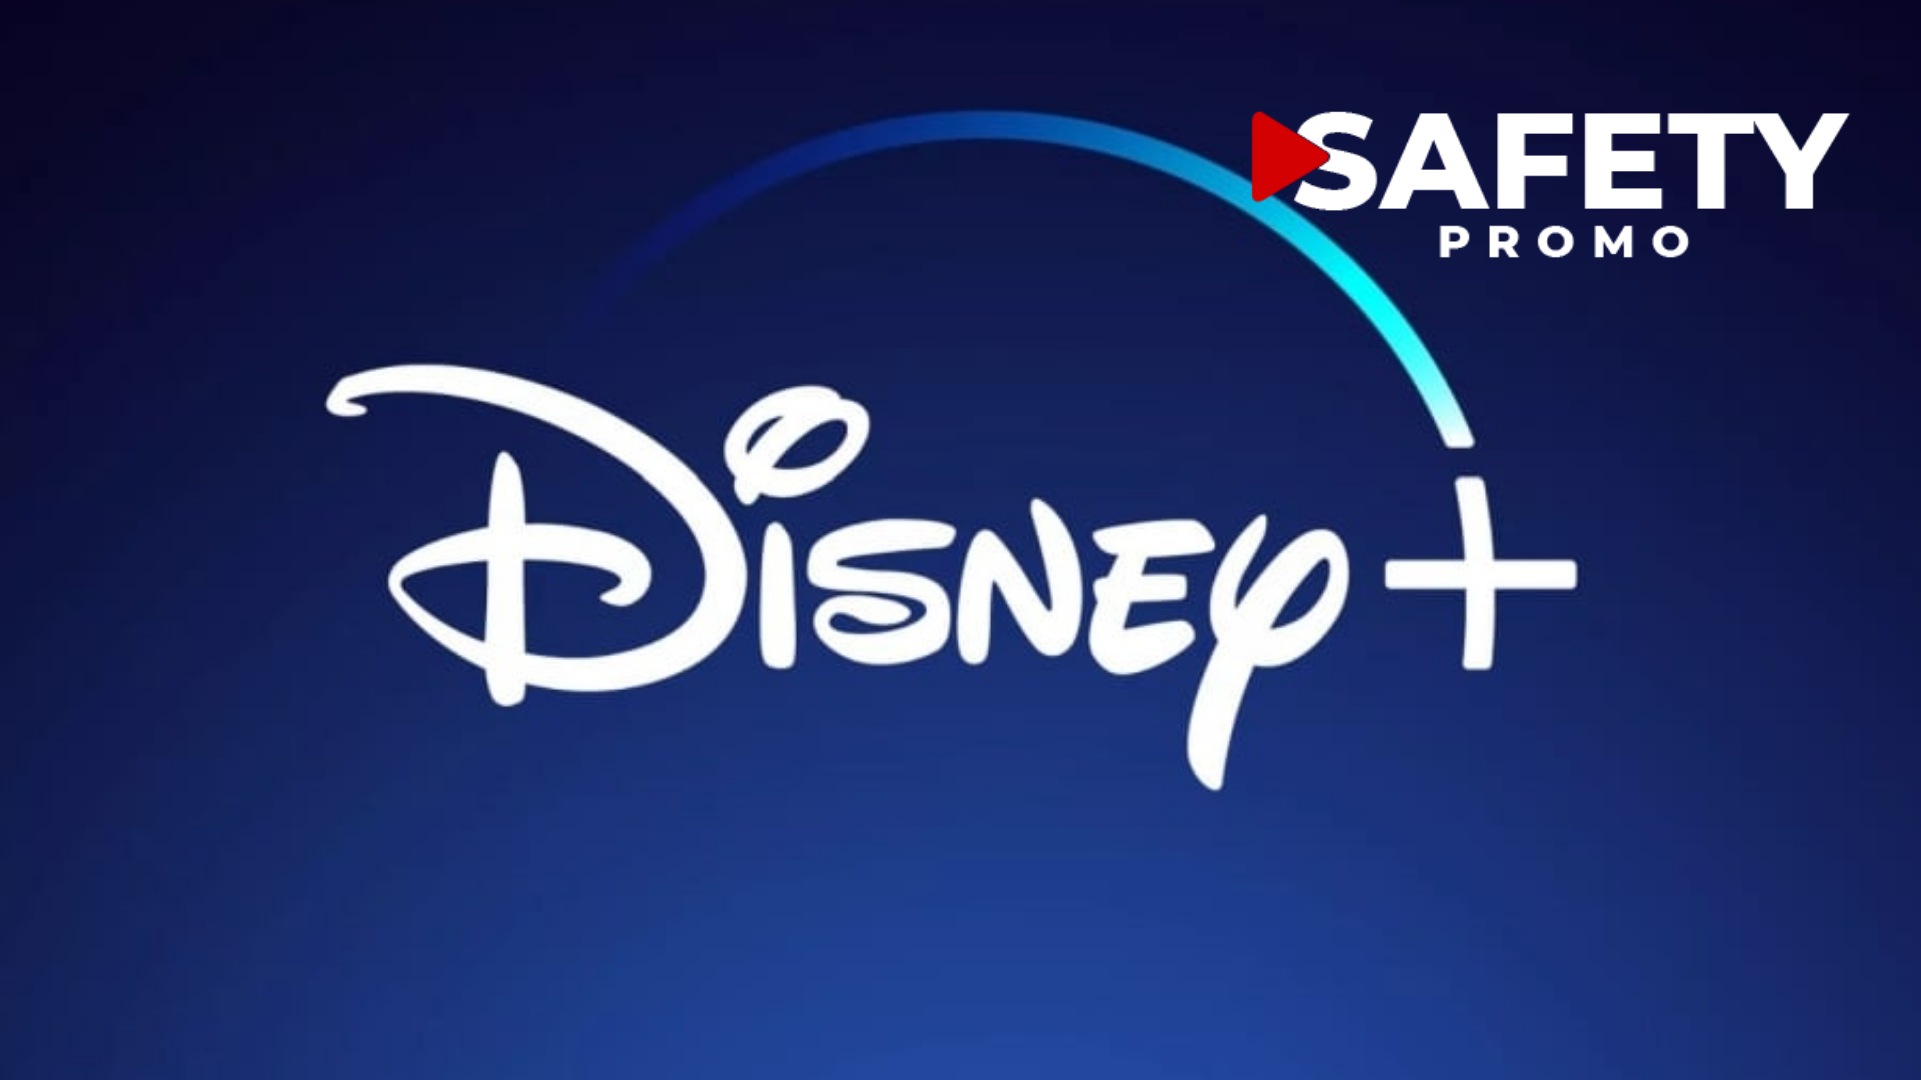 En juin, Disney+ mettra fin au partage de compte et imposera des sanctions